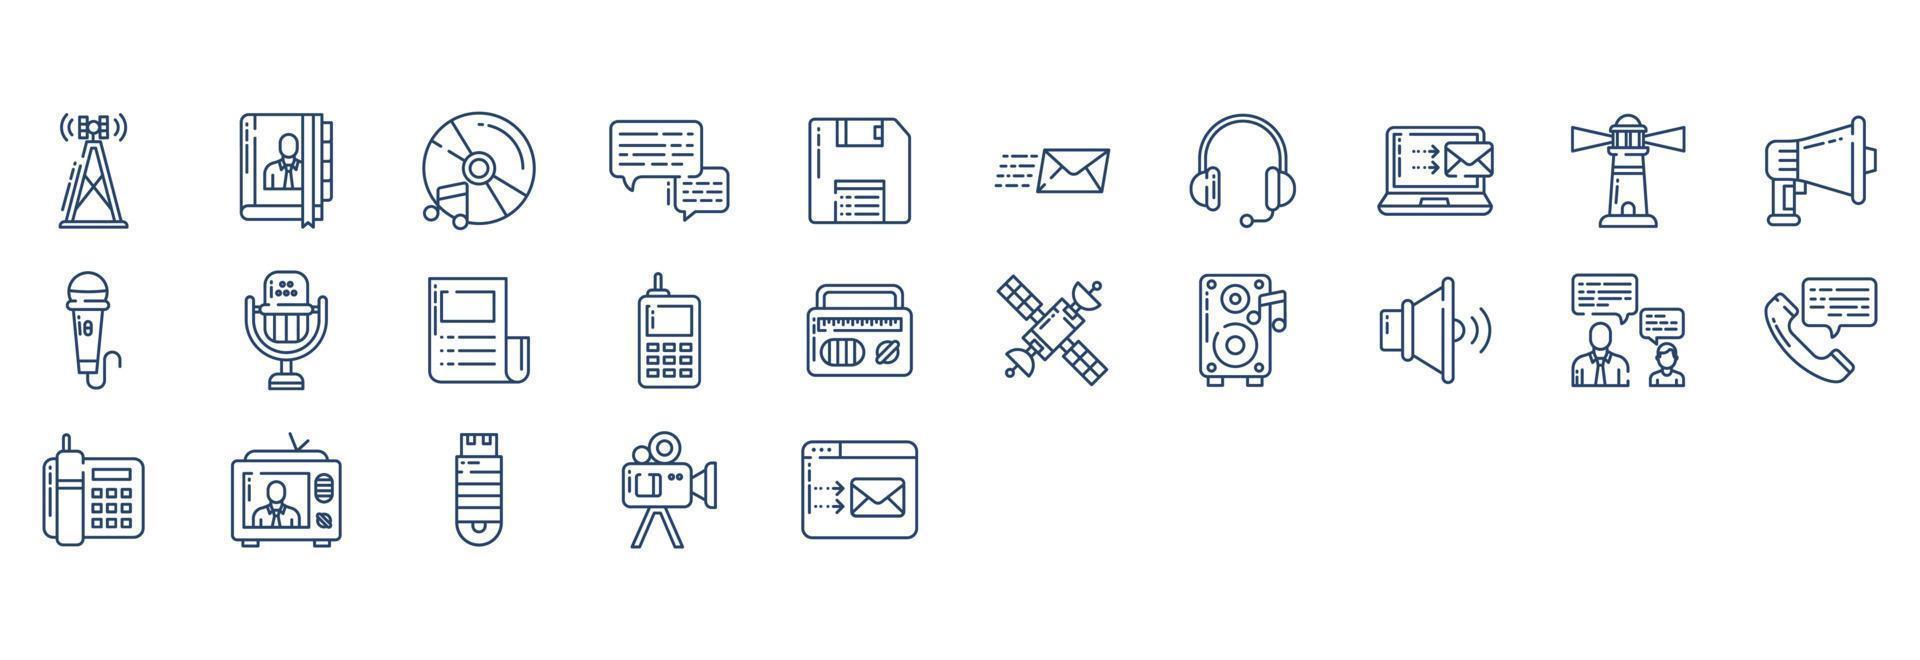 samling av ikoner relaterad till kommunikation, Inklusive ikoner tycka om antenn, bok, chatt, diskett och Mer. vektor illustrationer, pixel perfekt uppsättning